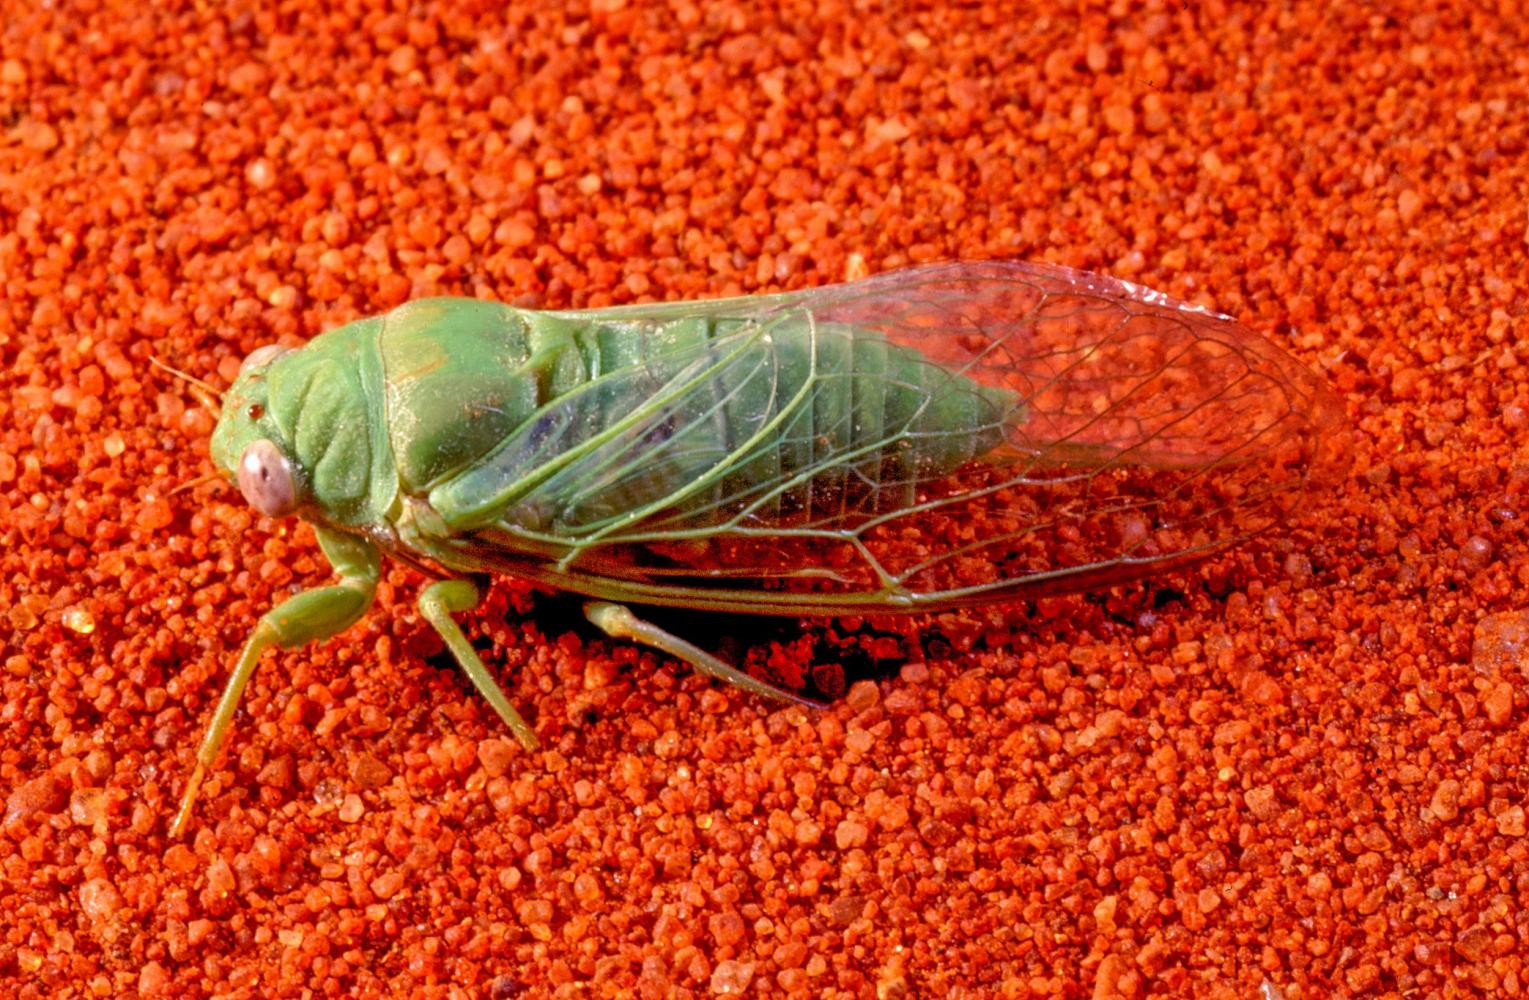 Including interesting cicadas ...